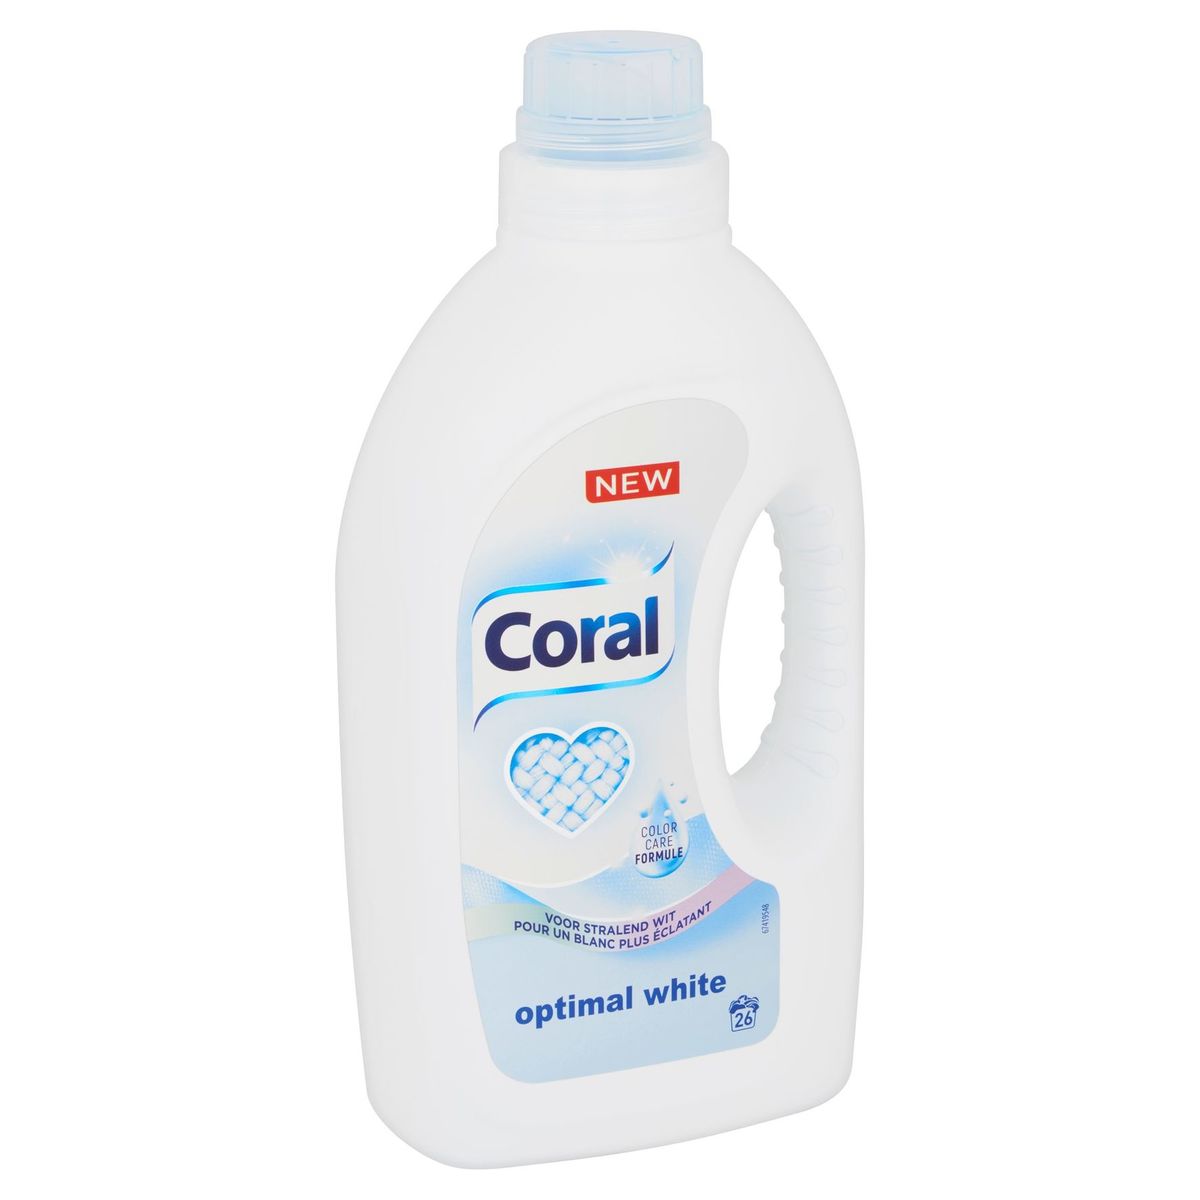 Coral Détergent Liquide pour Linge Blanc Optimal White 26 Lavages